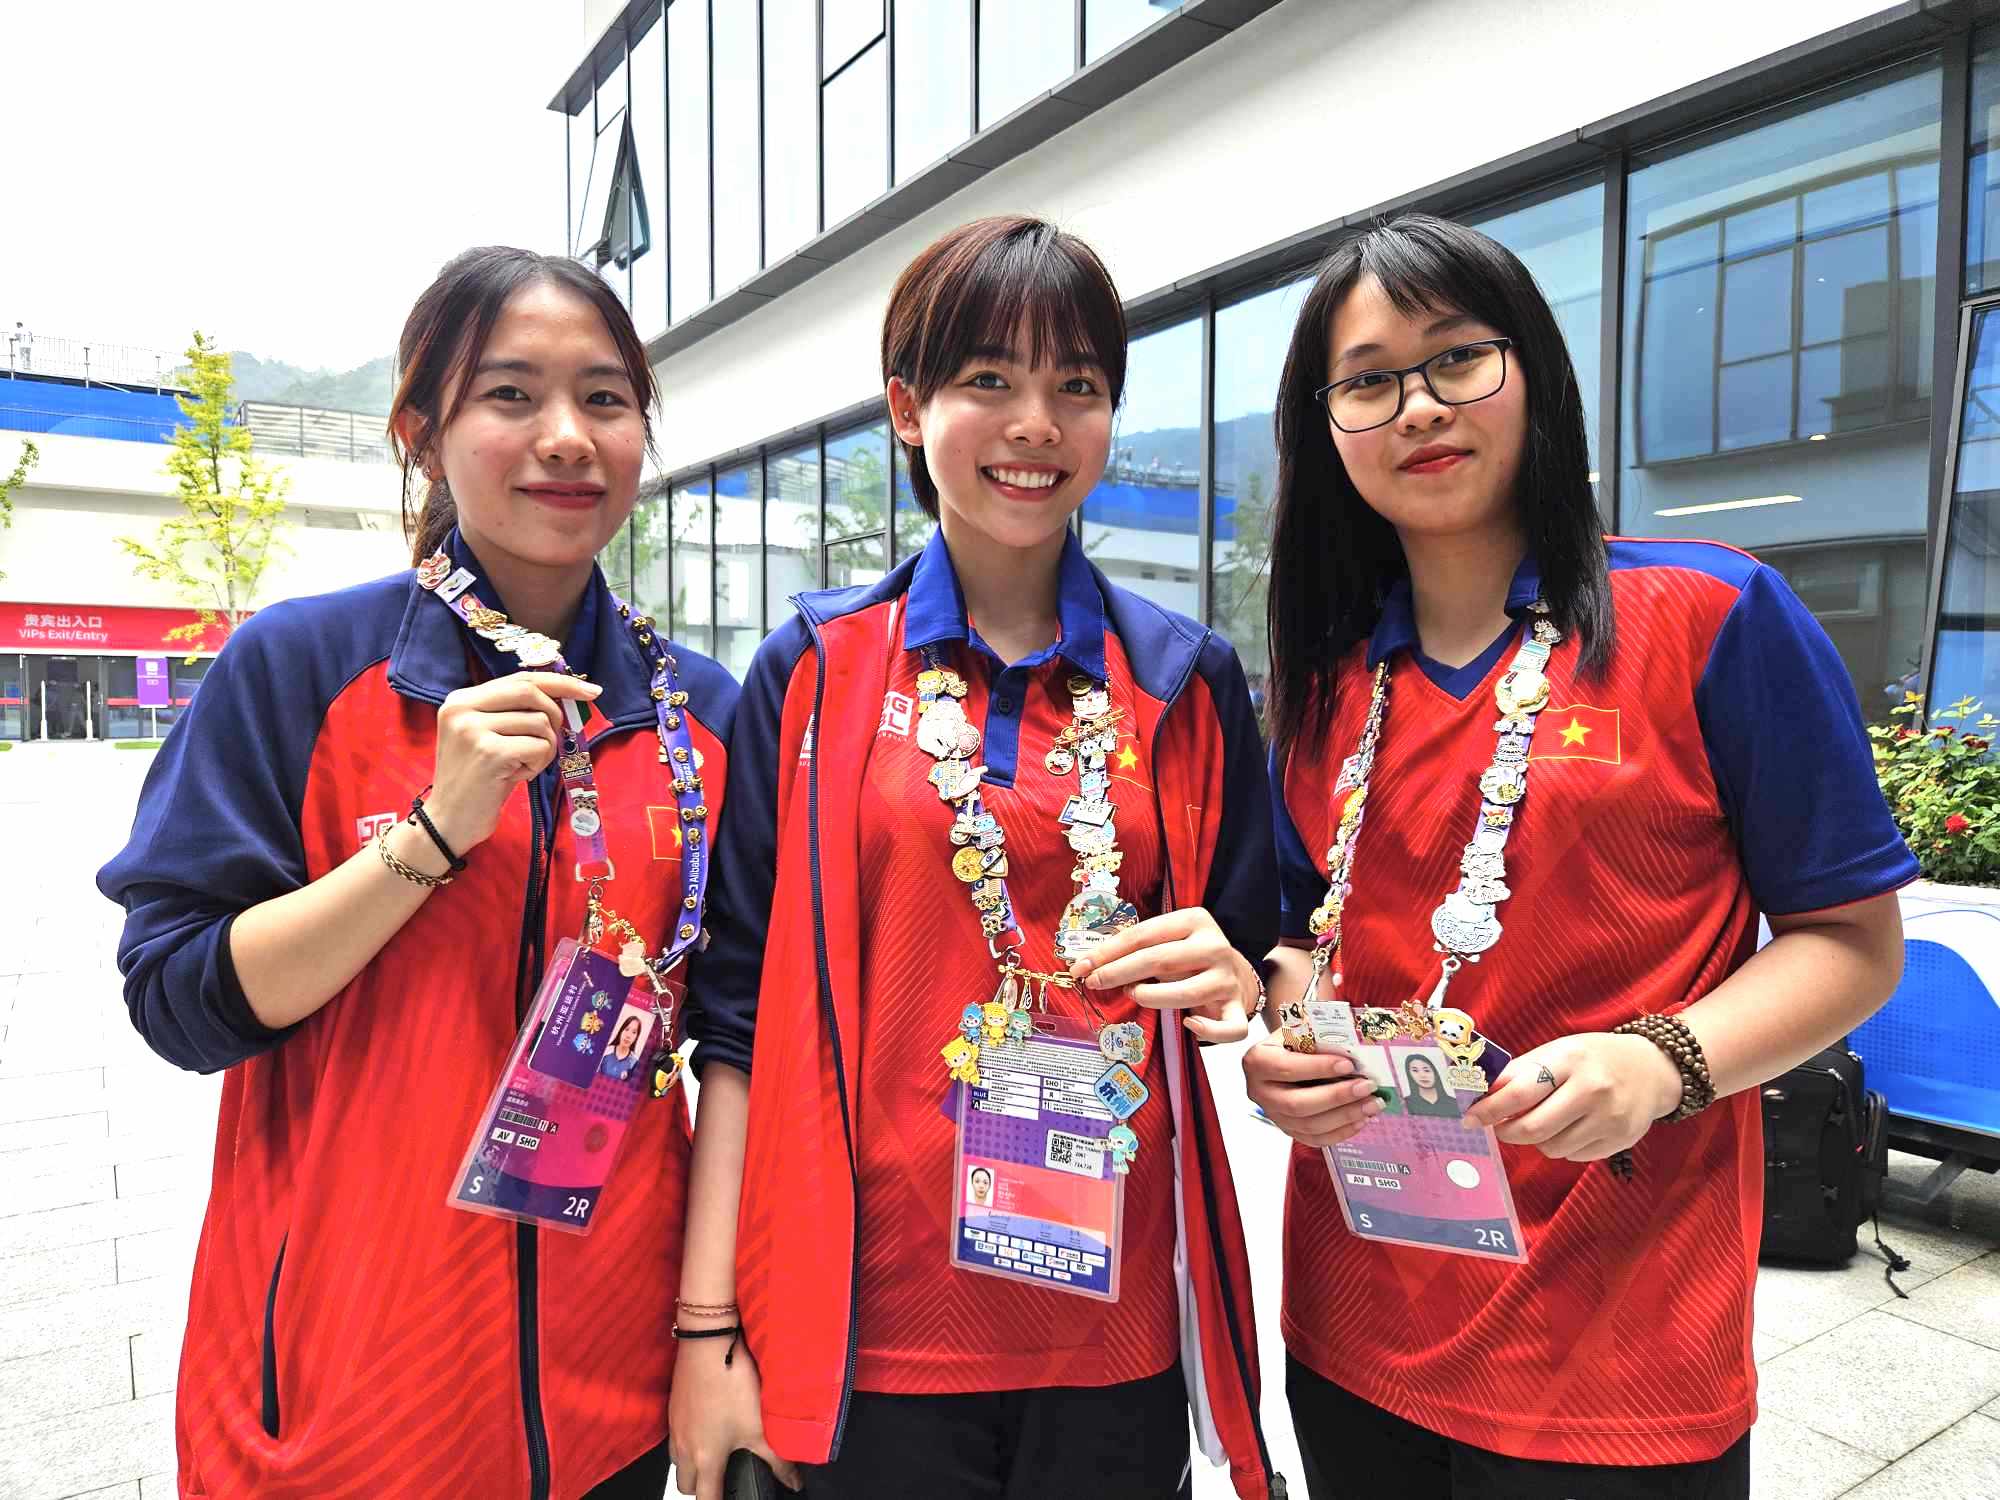 Bộ 3 hot girl bắn súng (từ trái sang phải) Lê Thị Mộng Tuyền, Phí Thị Thảo và Nguyễn Thị Thảo